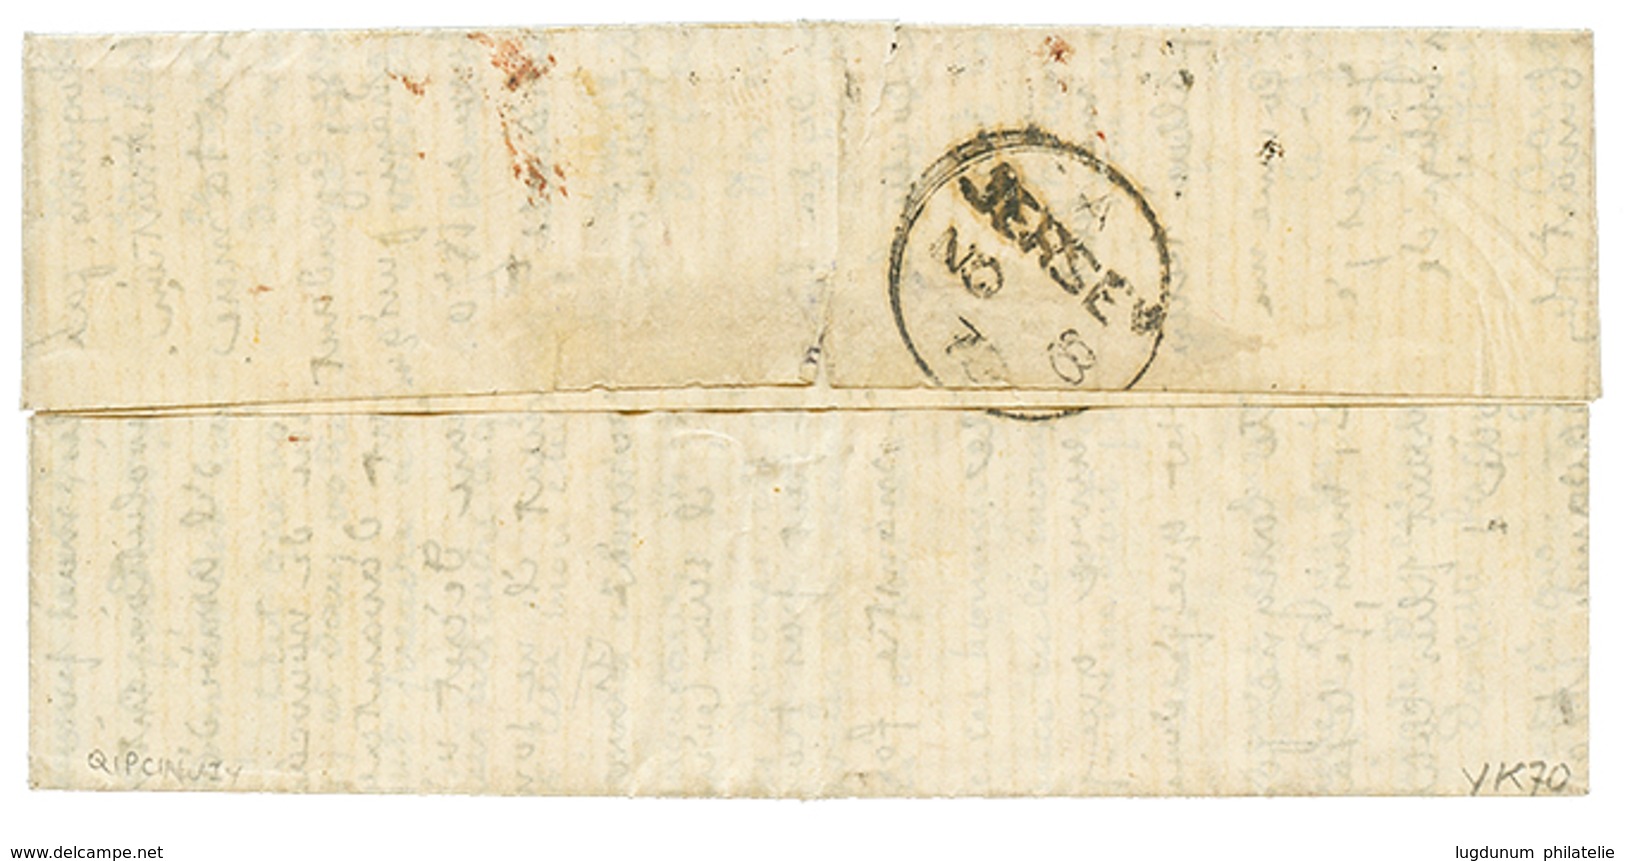 424 "BALLON MONTE Pour JERSEY" : 10c+ 20c(pd) Obl. Etoile + PARIS 2 Nov 70 Sur Lettre Pour JERSEY. Verso, Arrivée JERSEY - Guerre De 1870